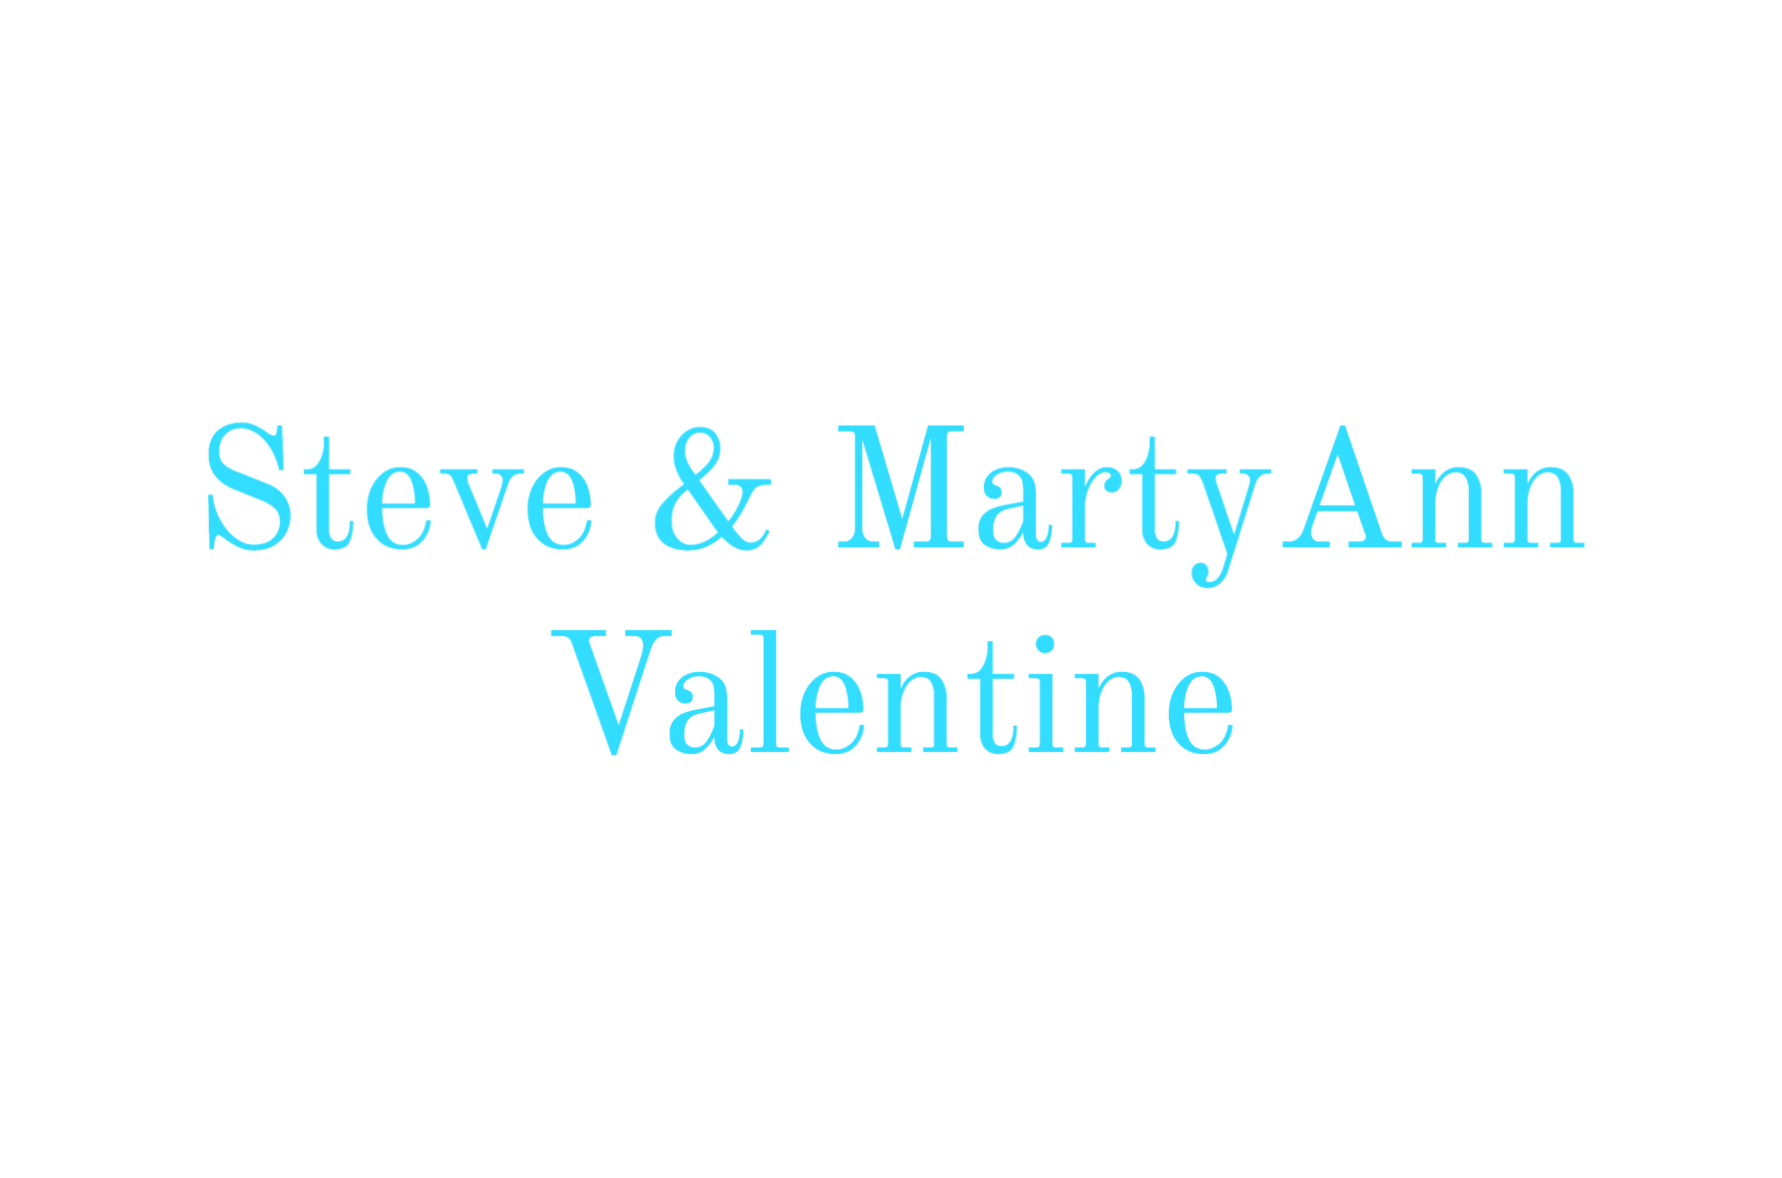 OIC_Steve & MartyAnn Valentin_logo